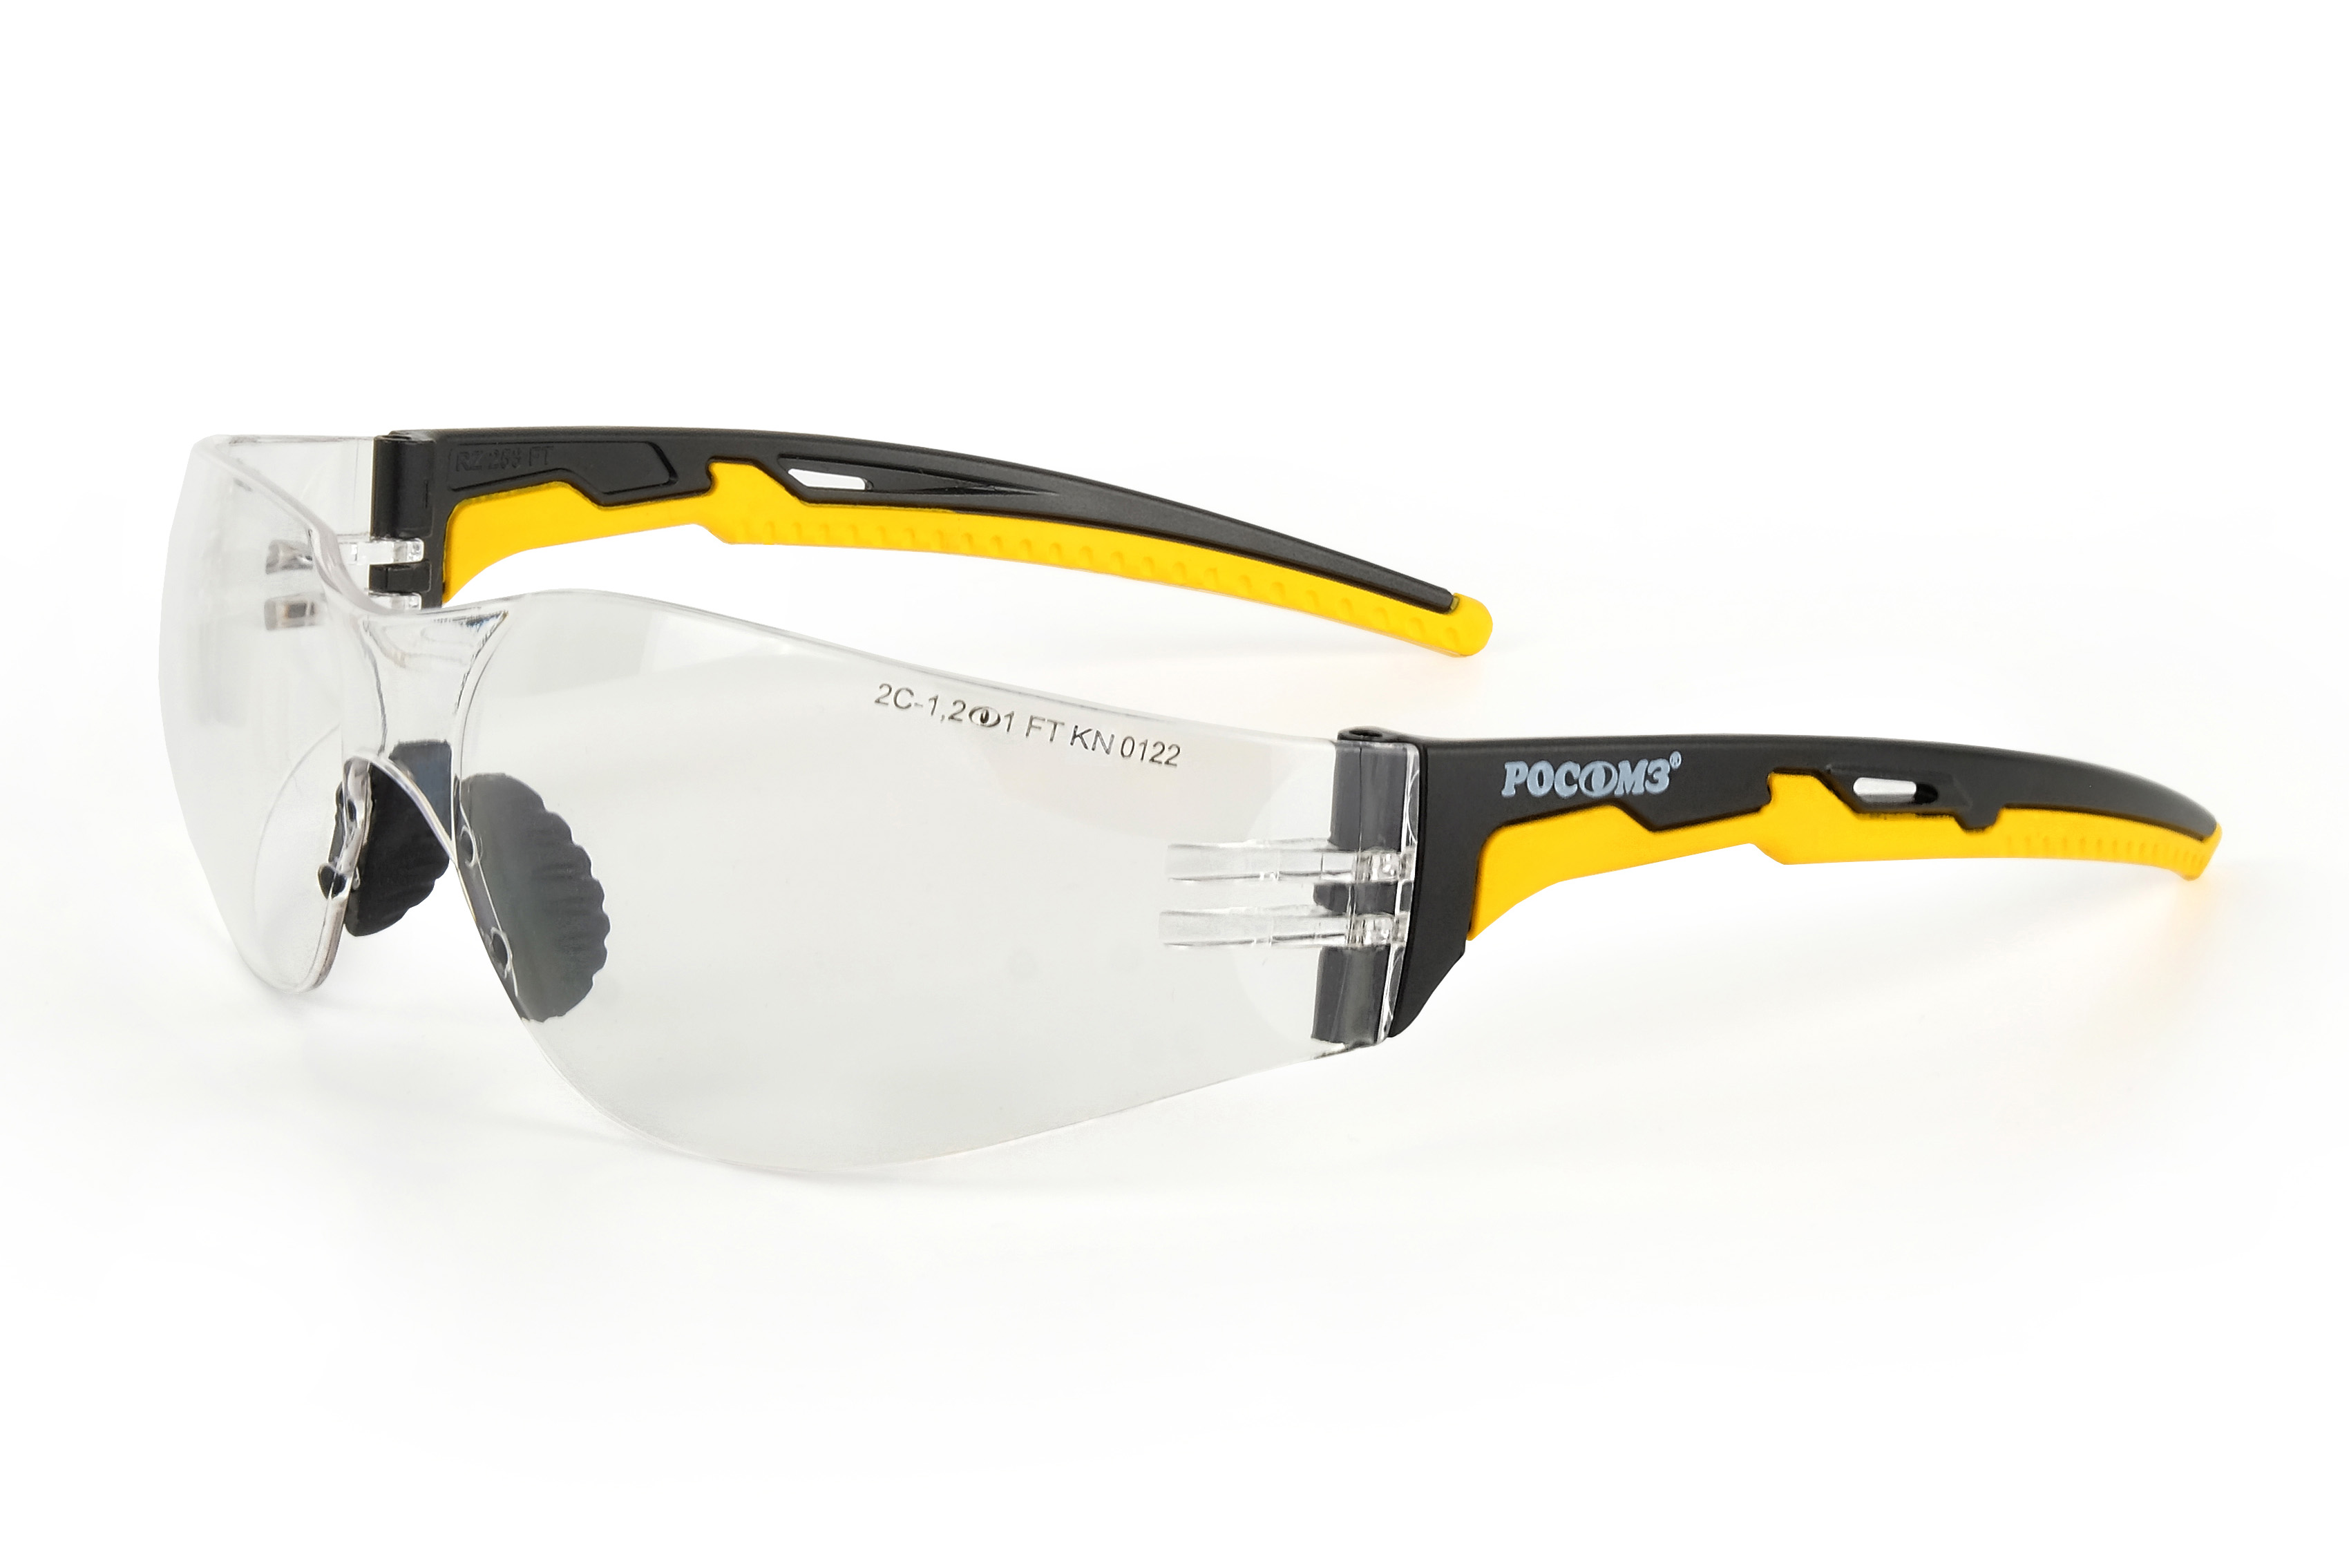 О15 HAMMER ACTIVE StrongGlass (2C-1,2 PC) очки защитные открытые с мягким носоупором